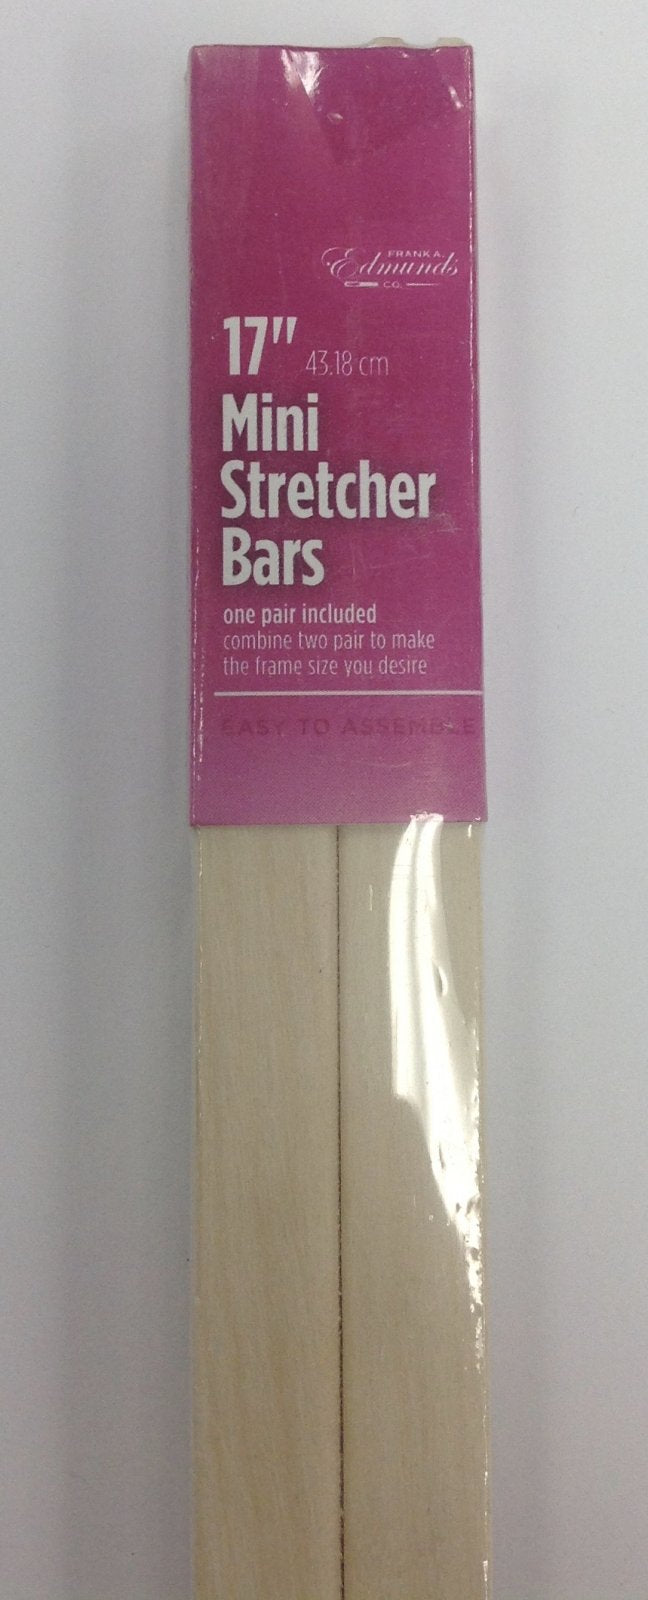 mini stretcher bars